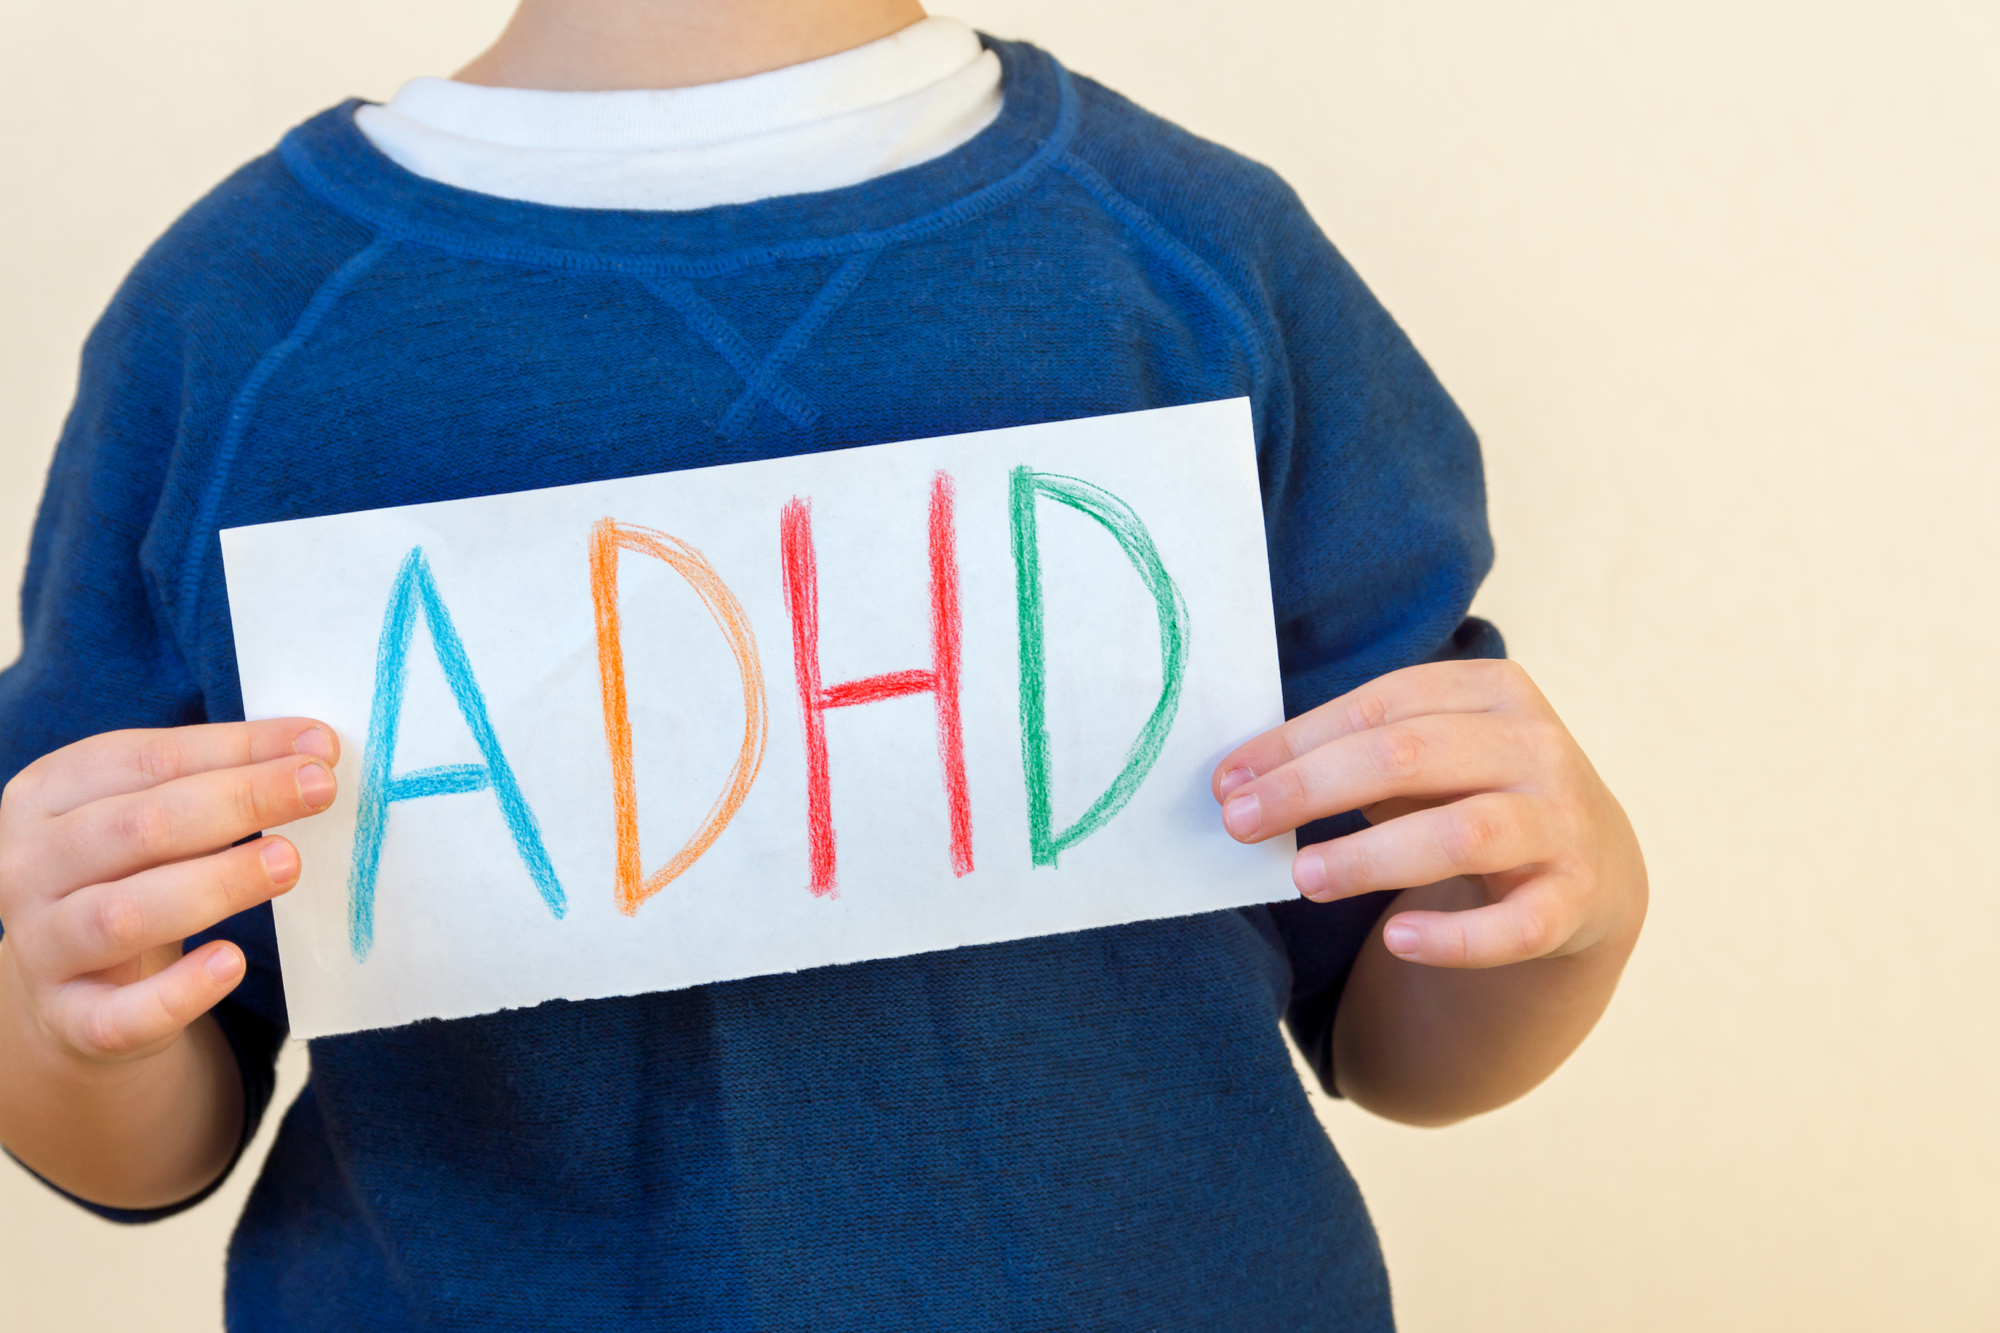 5 key issues that cause ADHD-like symptoms